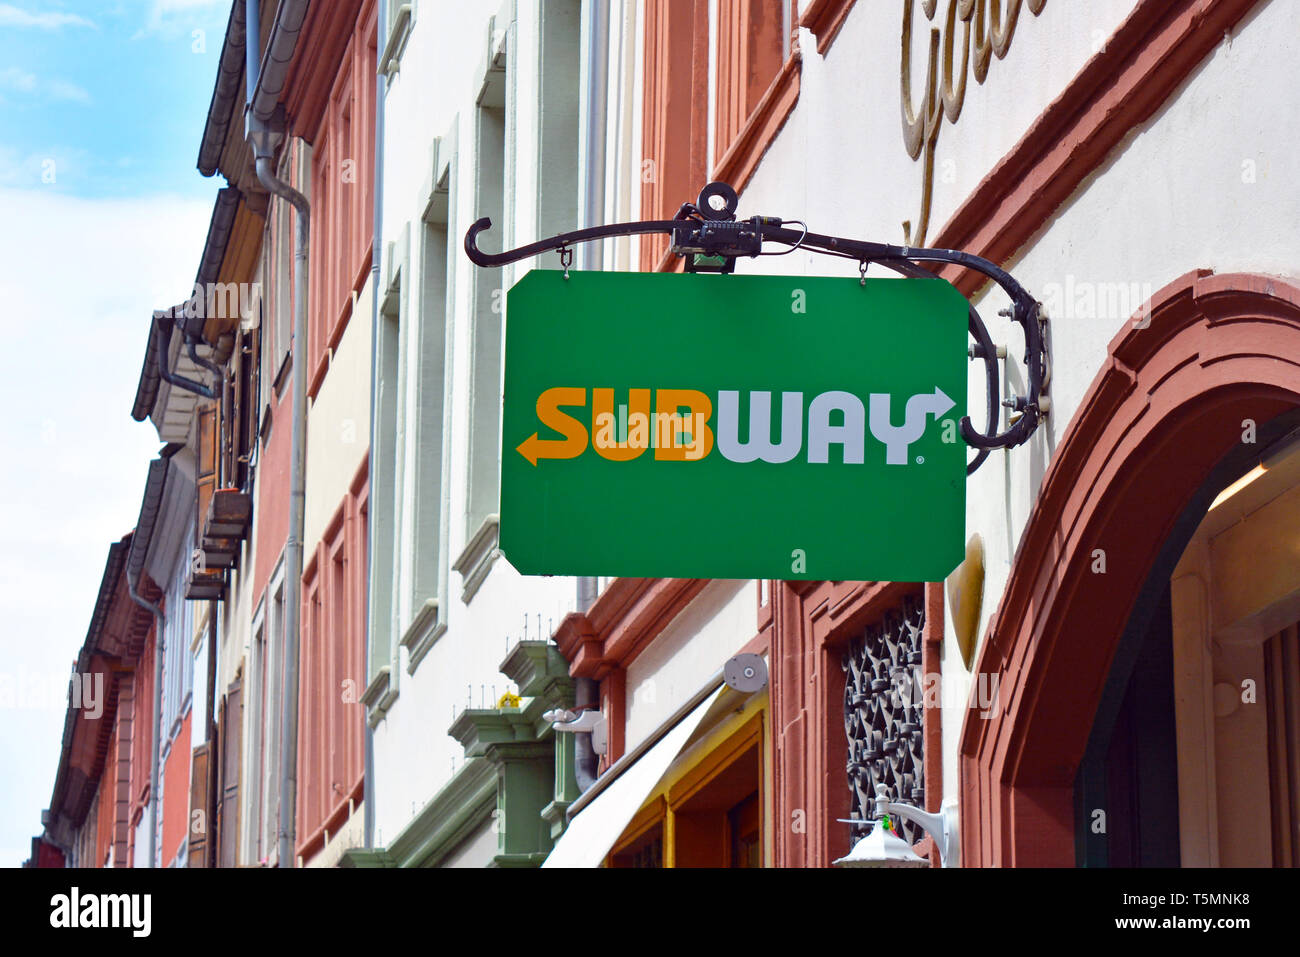 Tienda colgantes banner con logo de restaurante de comida rápida llamado franquicia subterráneos que vende sandwiches submarinos y otras comidas con la histórica vieja bui Foto de stock